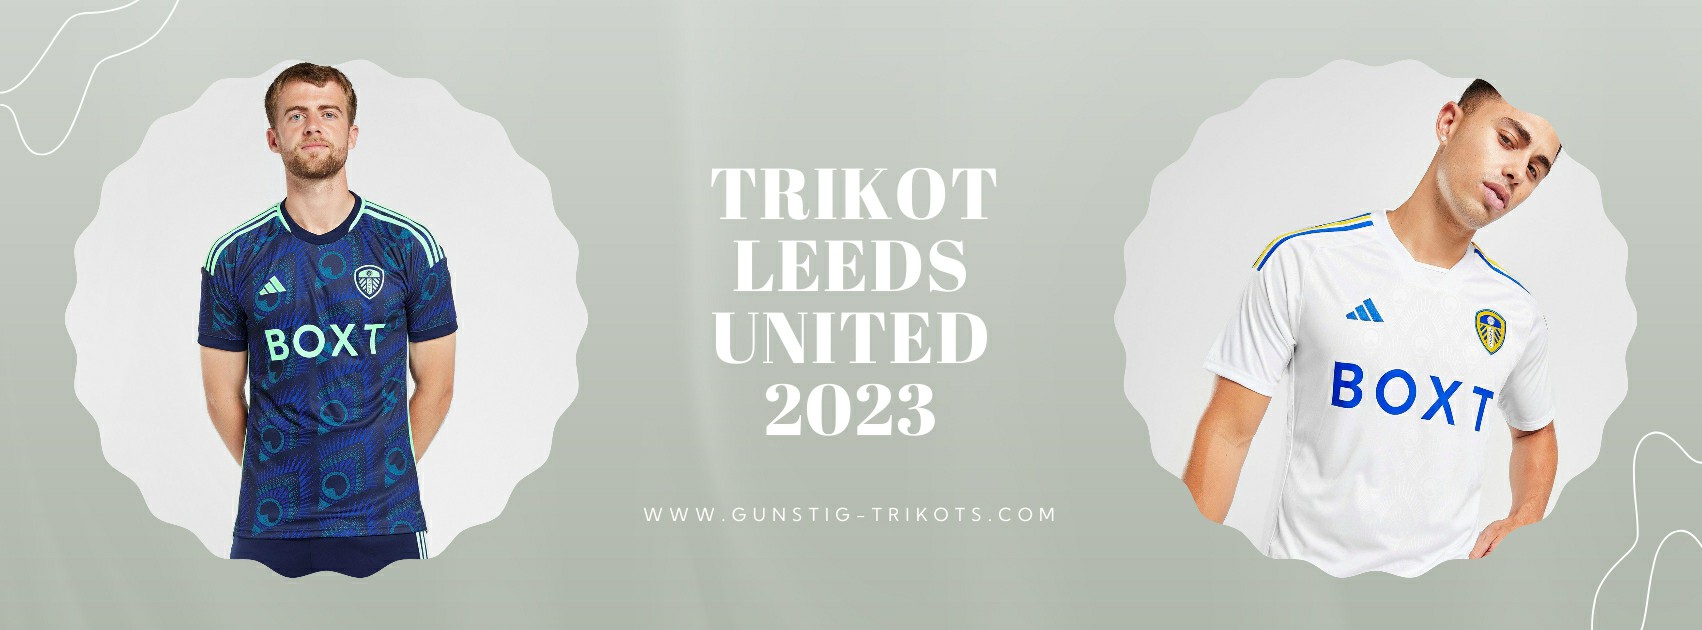 Leeds United Trikot 2023-2024